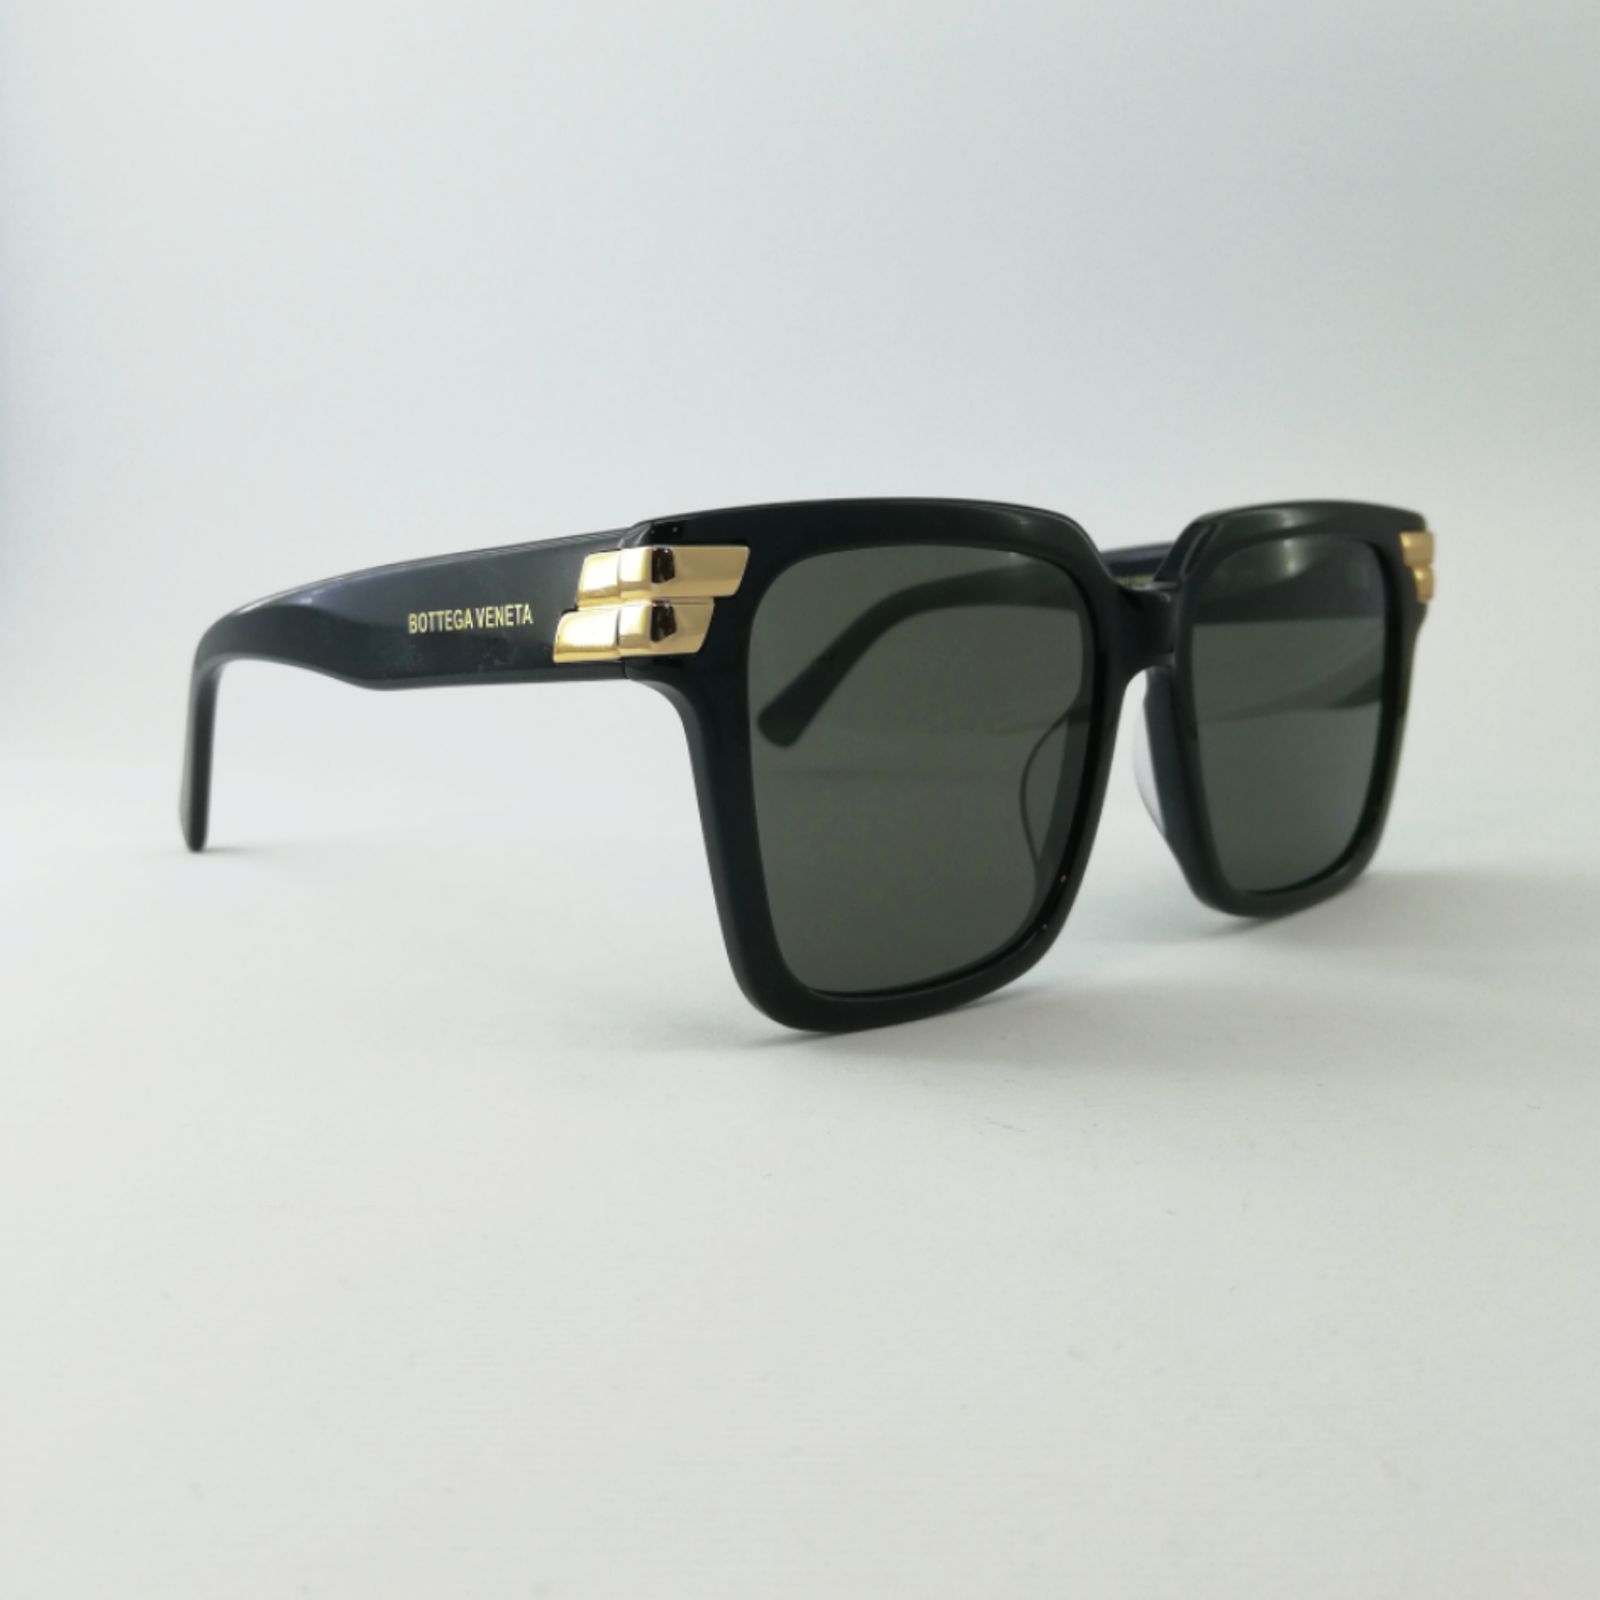 عینک آفتابی بوتگا ونتا مدل BV1159S 001 -  - 5